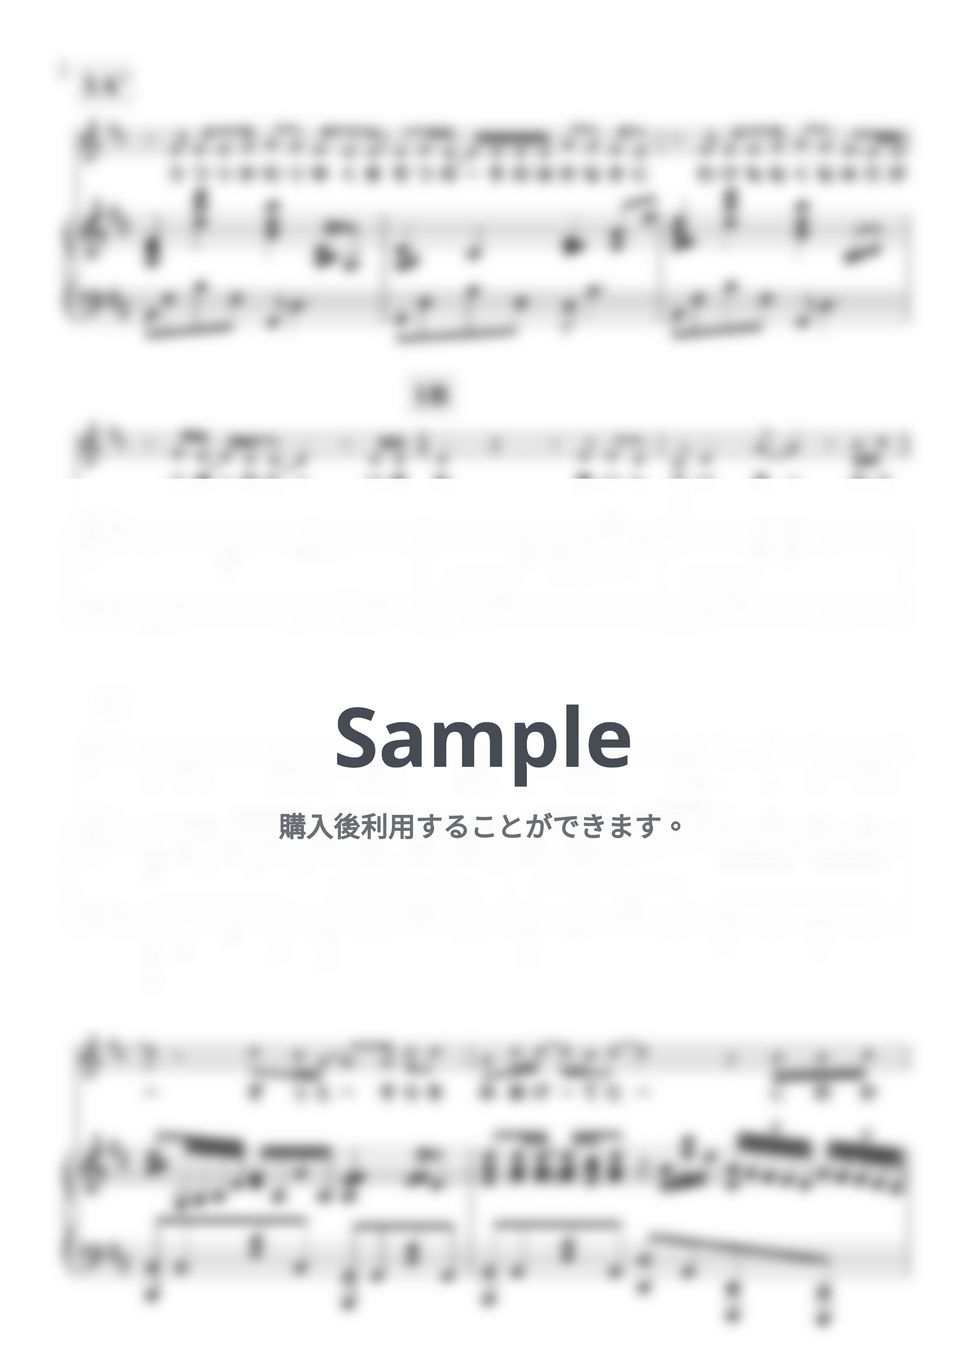 Gackt - Last Song (ピアノ弾き語り/原曲キー) by 鈴木 歌穂【ピアノ弾き語り】